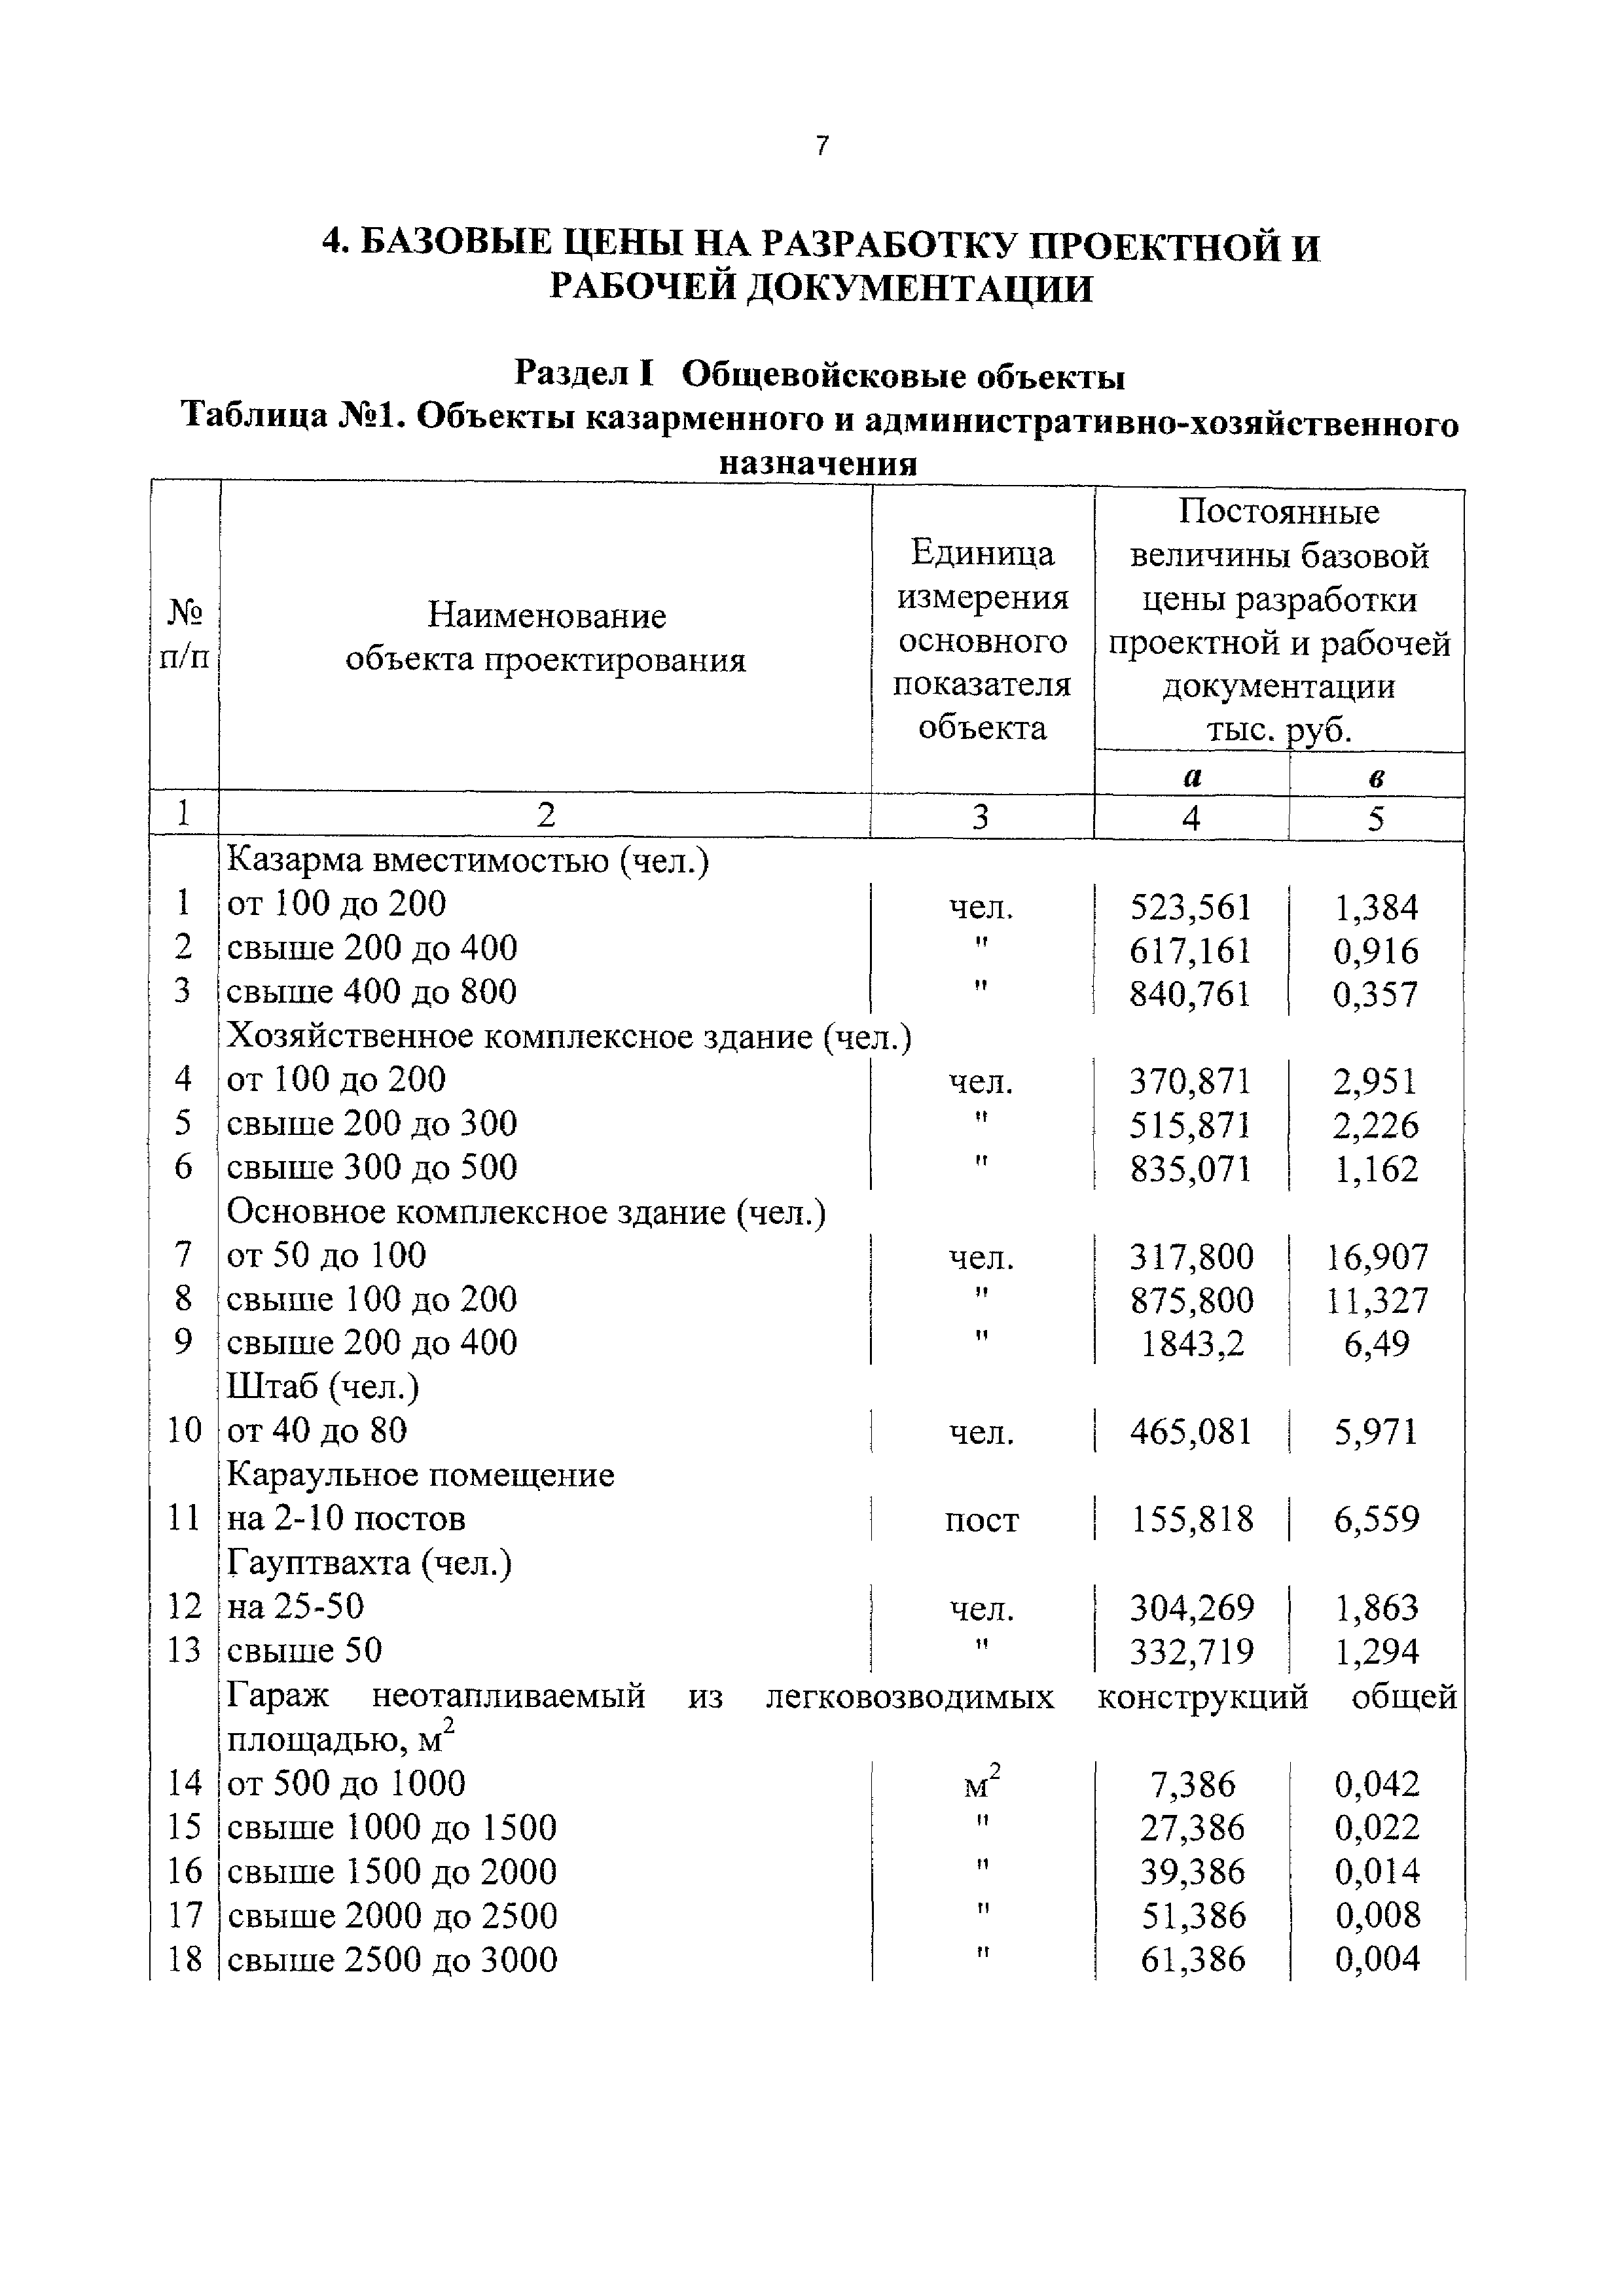 Справочник базовых цен 81 2001 03